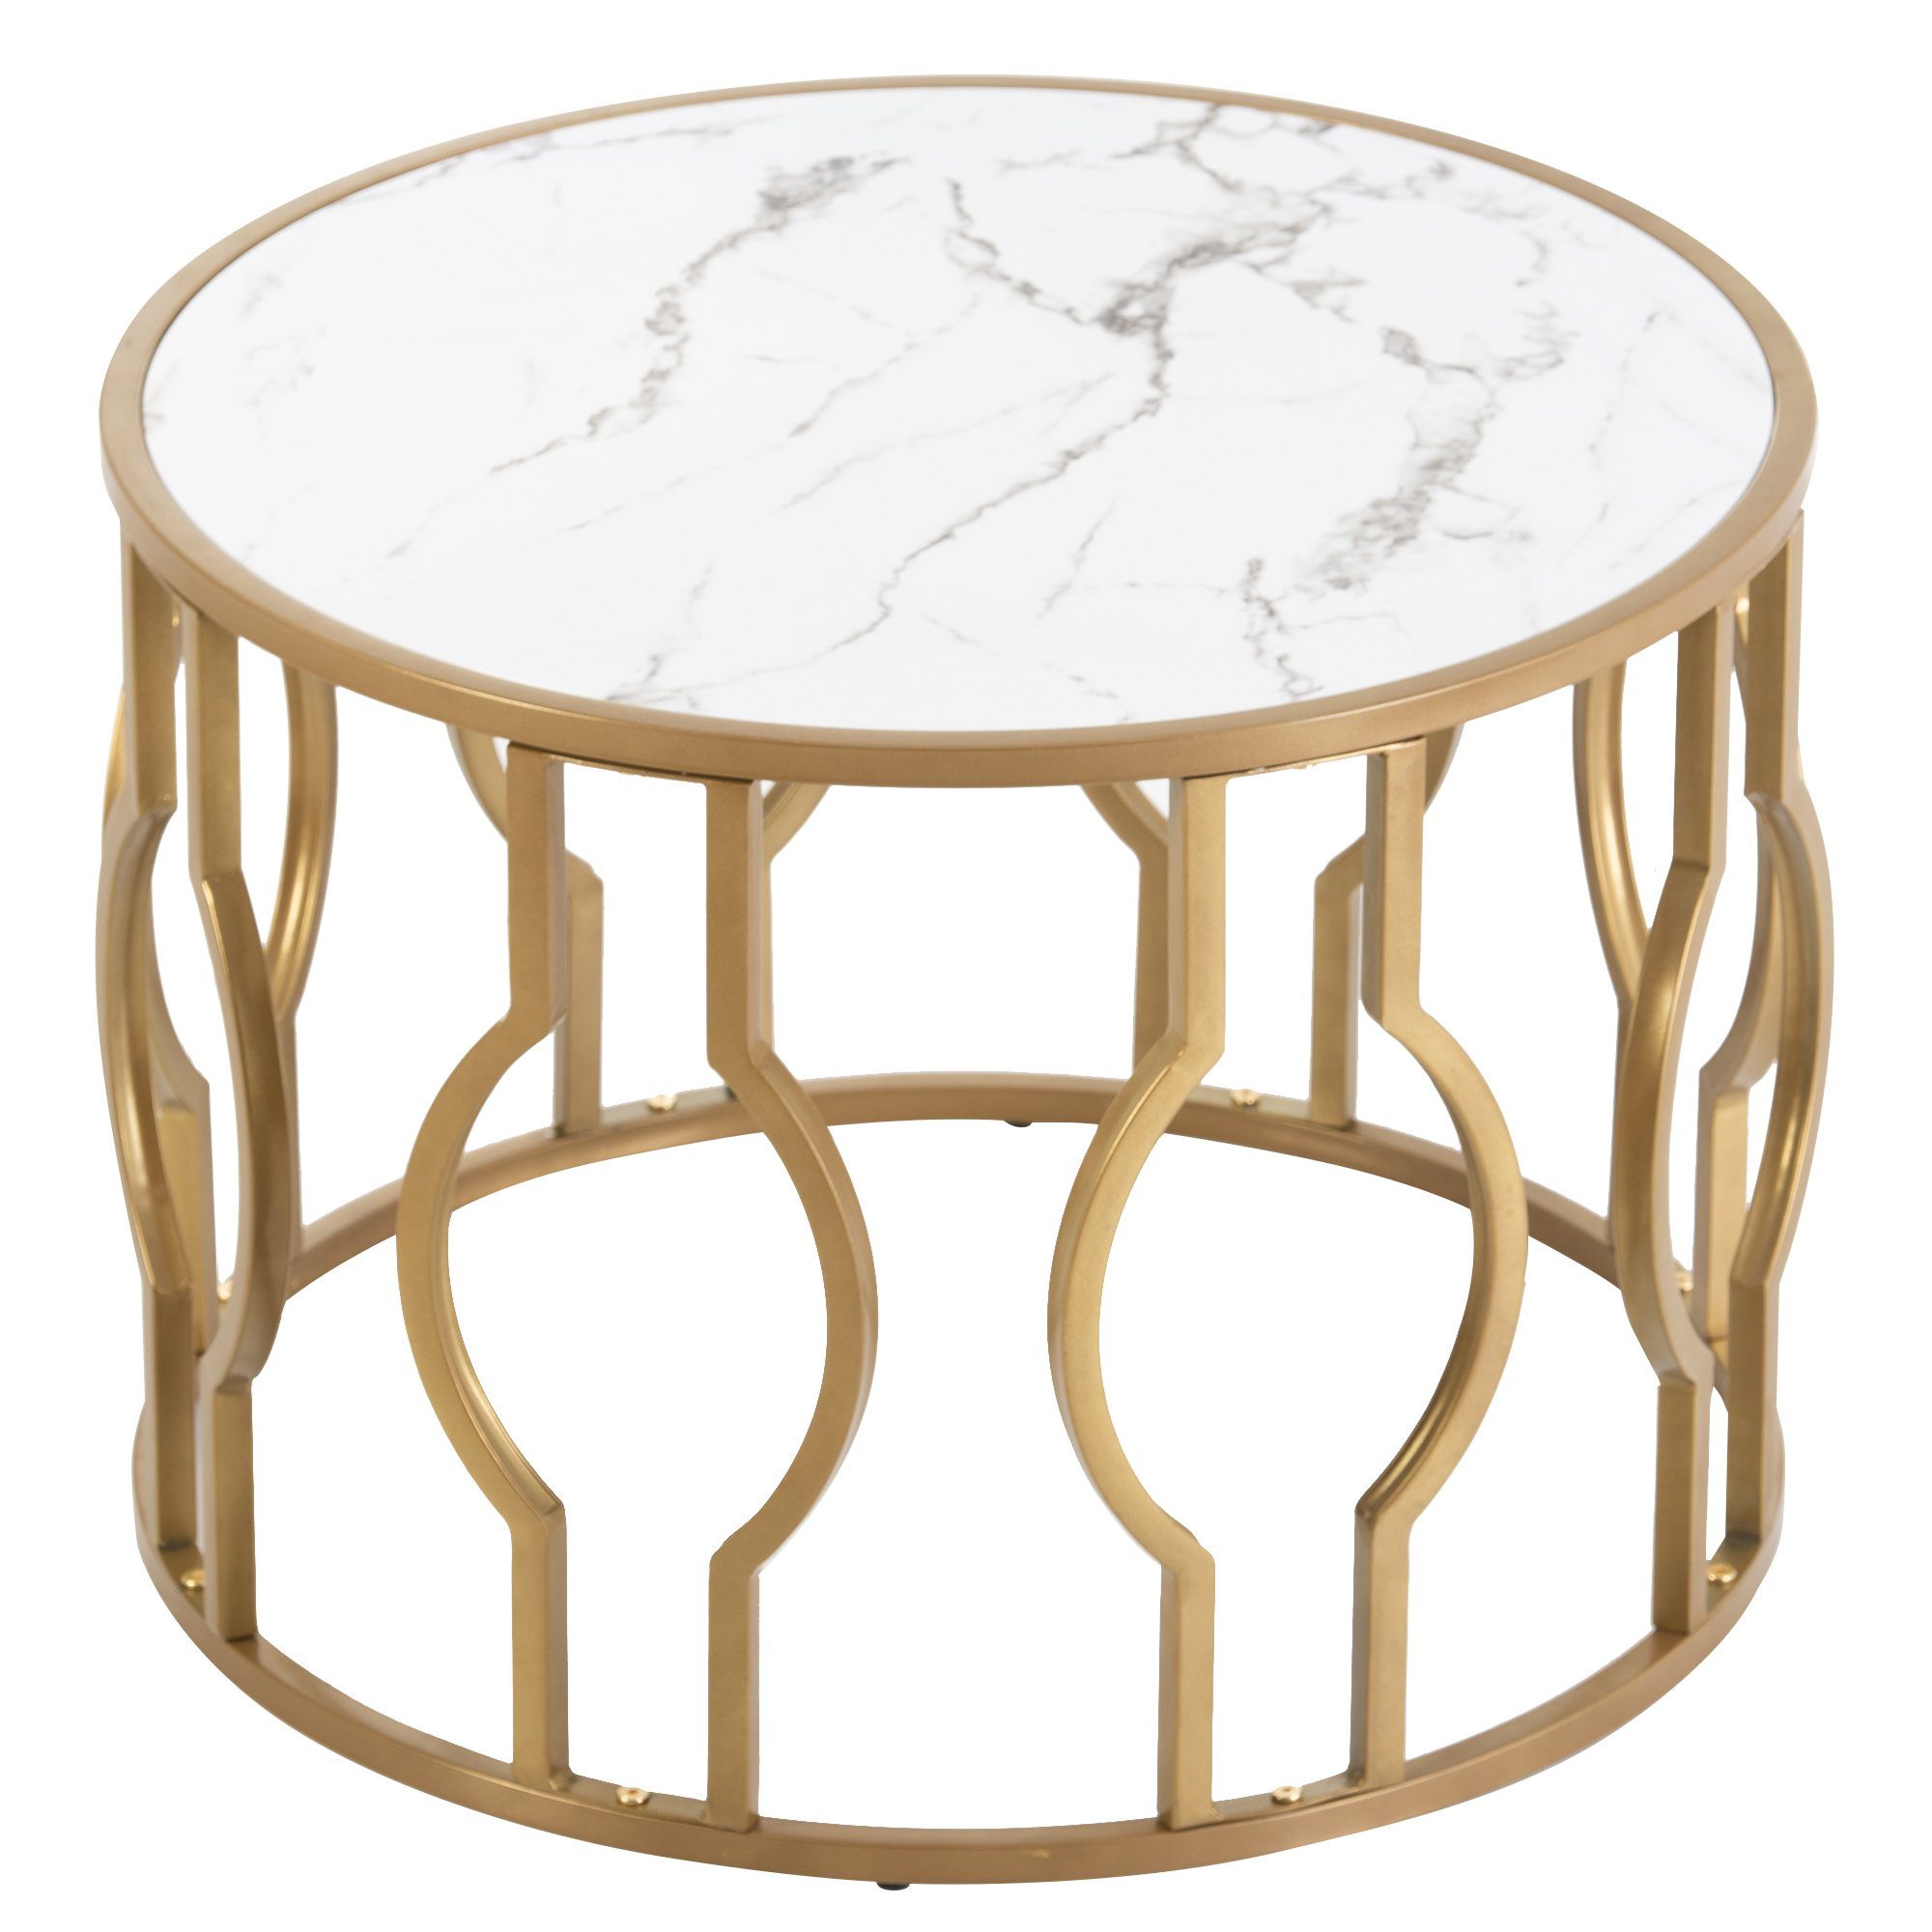 Ulife Couchtisch Runder Beistelltisch mit goldenen Metallbeine (Packung, 1 Tisch), Tischplatt mit Marmormuster, Beine mit geschwungenem Design | Couchtische